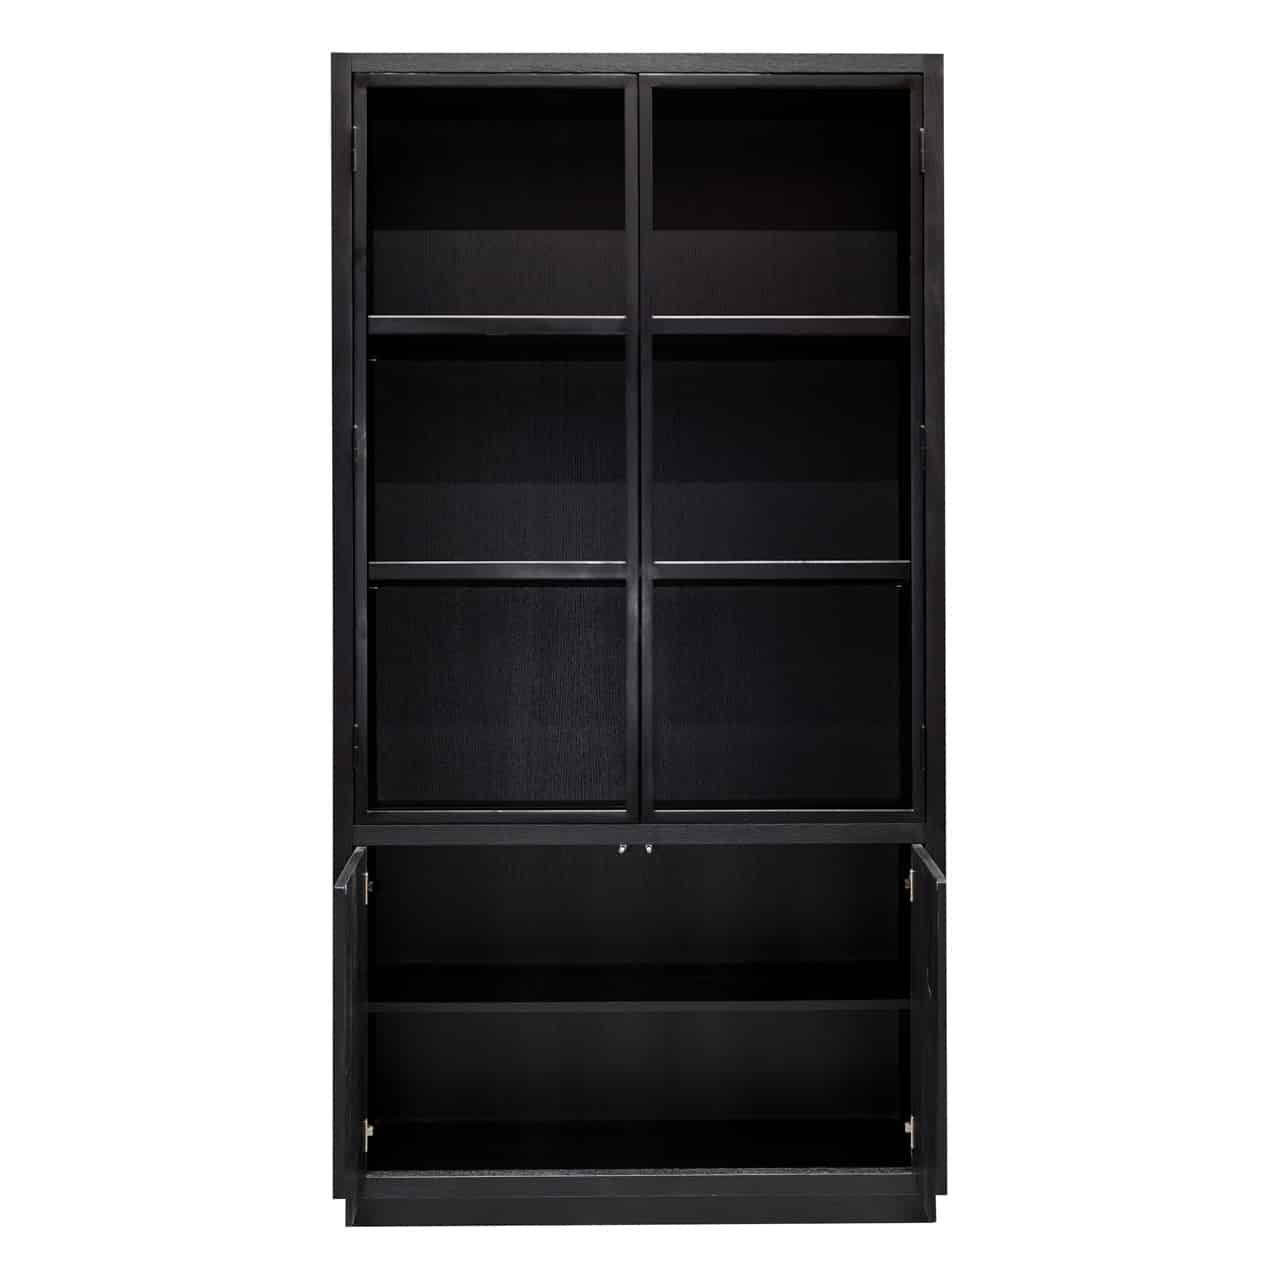 Cabinet Oakura 2-doors - Ein stilvolles und funktionales Möbelstück aus massivem Eichenholz mit zwei Türen und ausreichend Stauraum